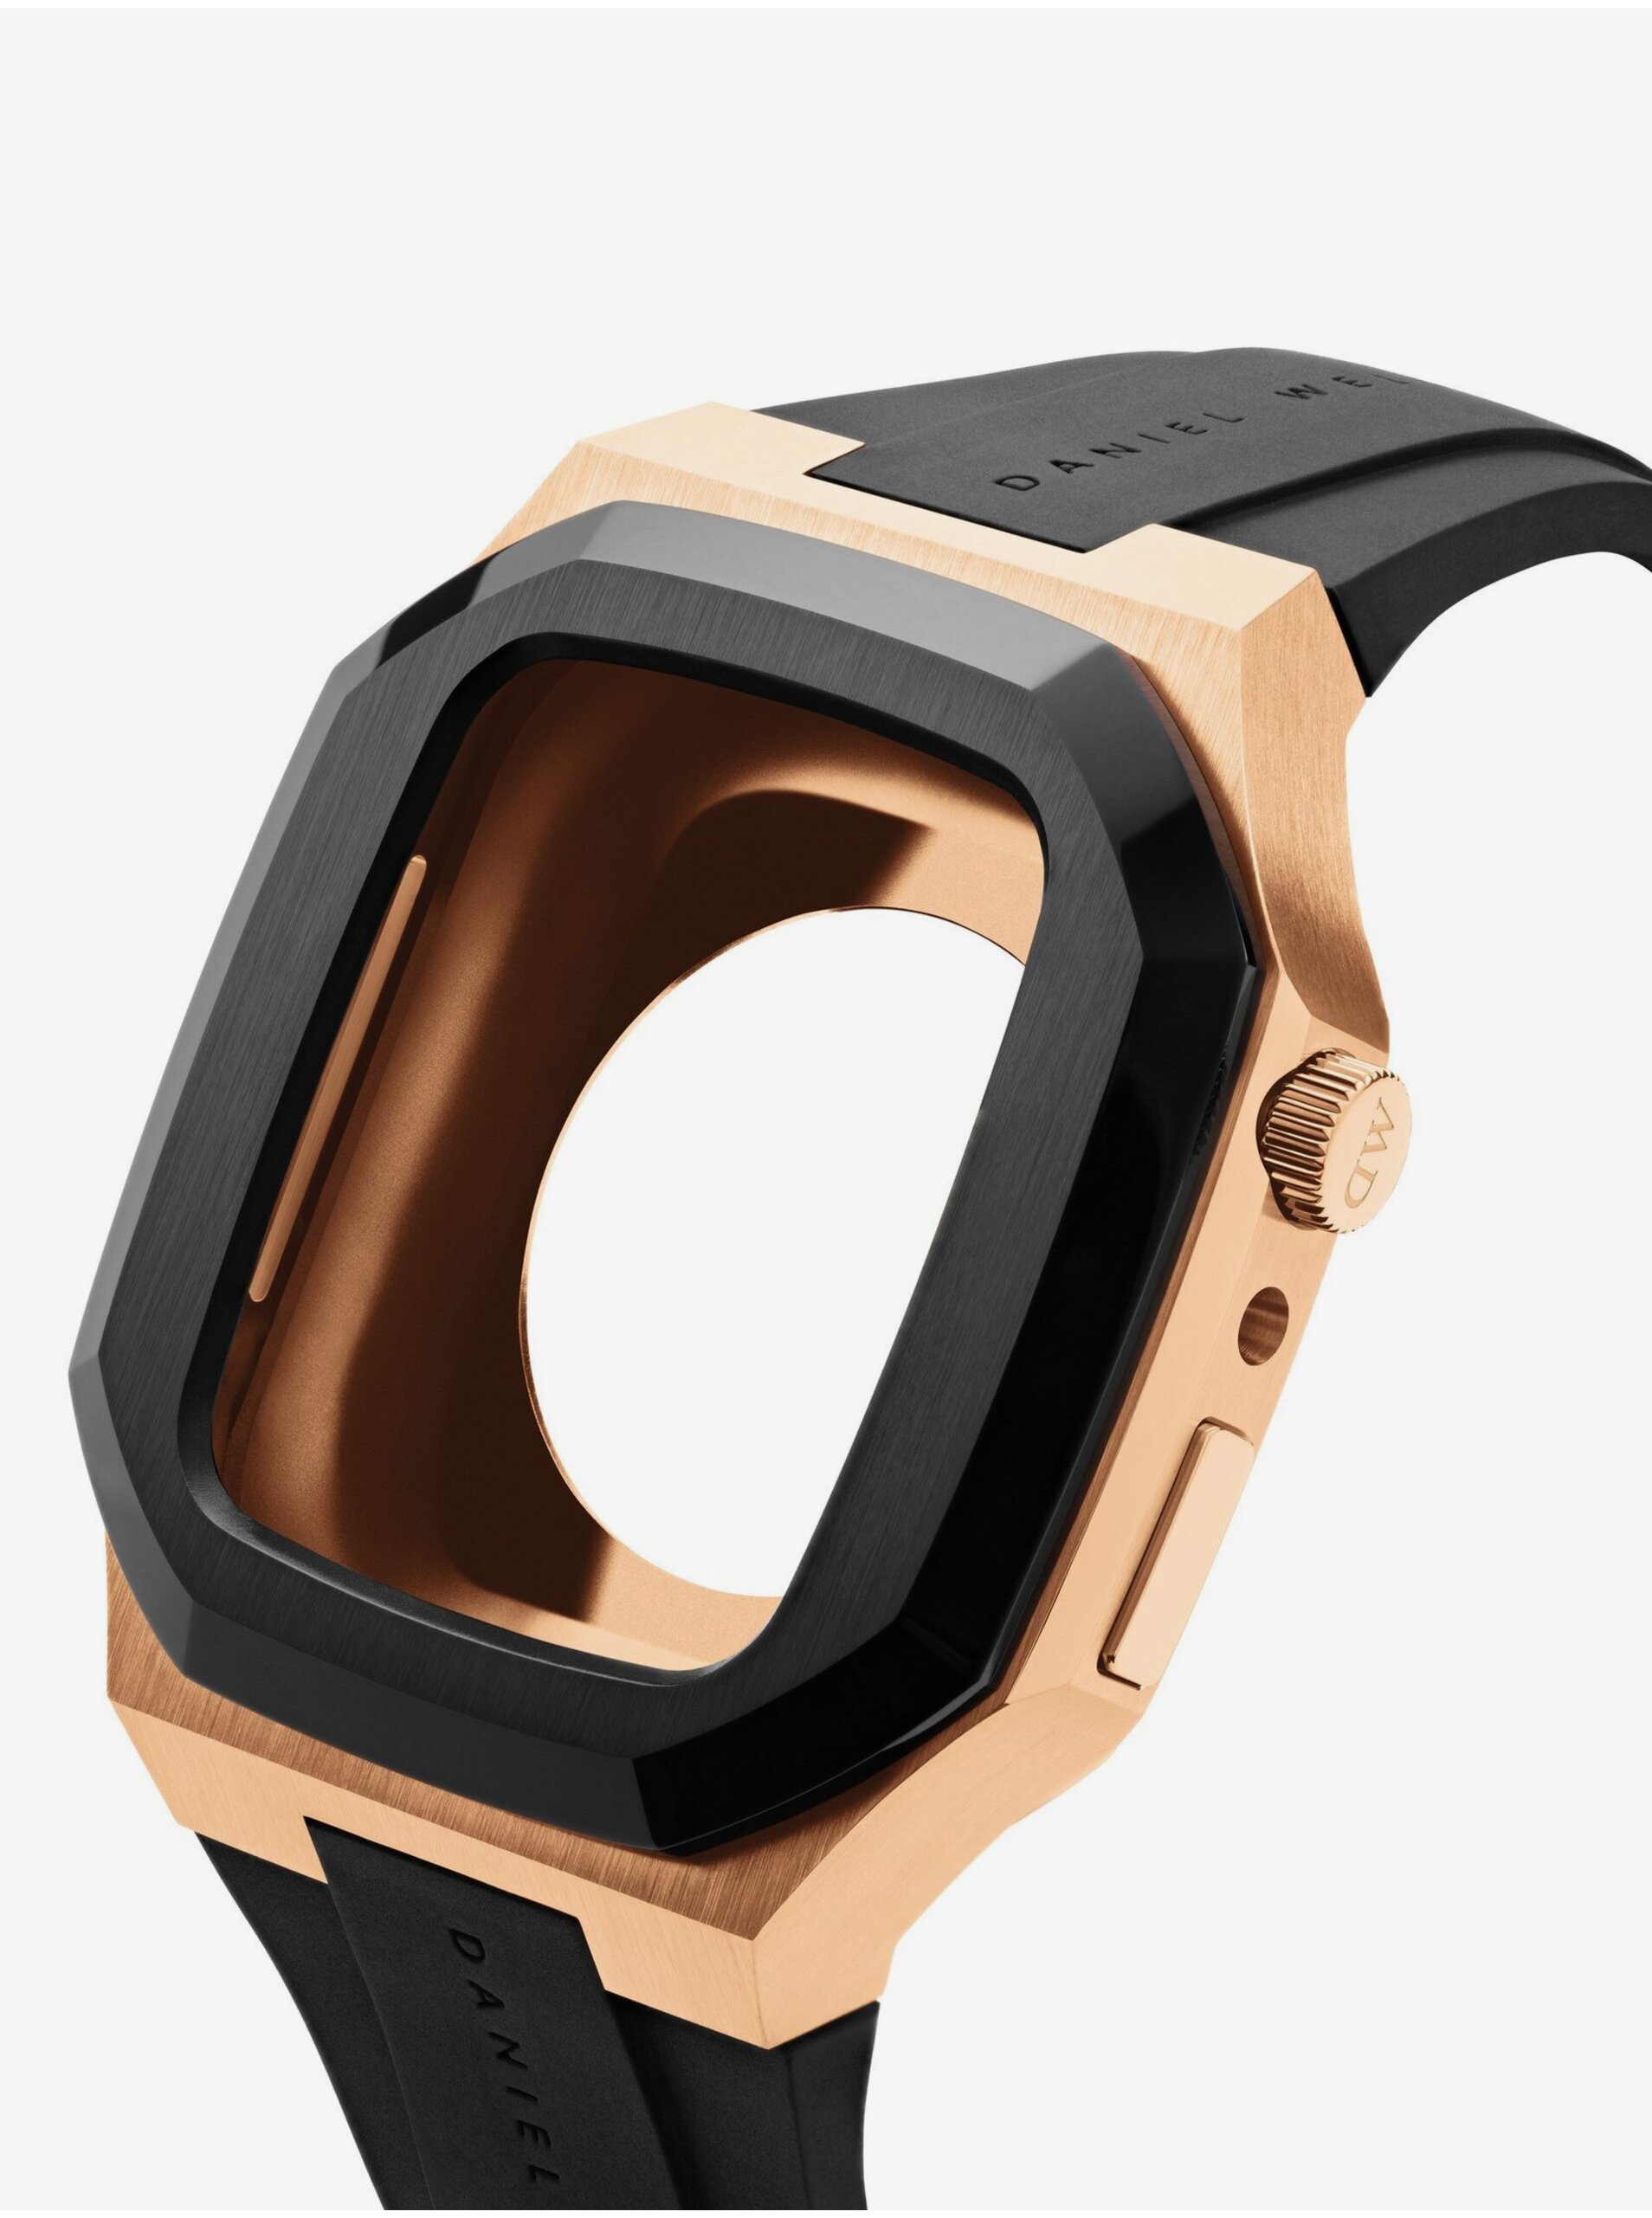 E-shop Kryt na Apple Watch v růžovozlaté barvě Daniel Wellington SWITCH